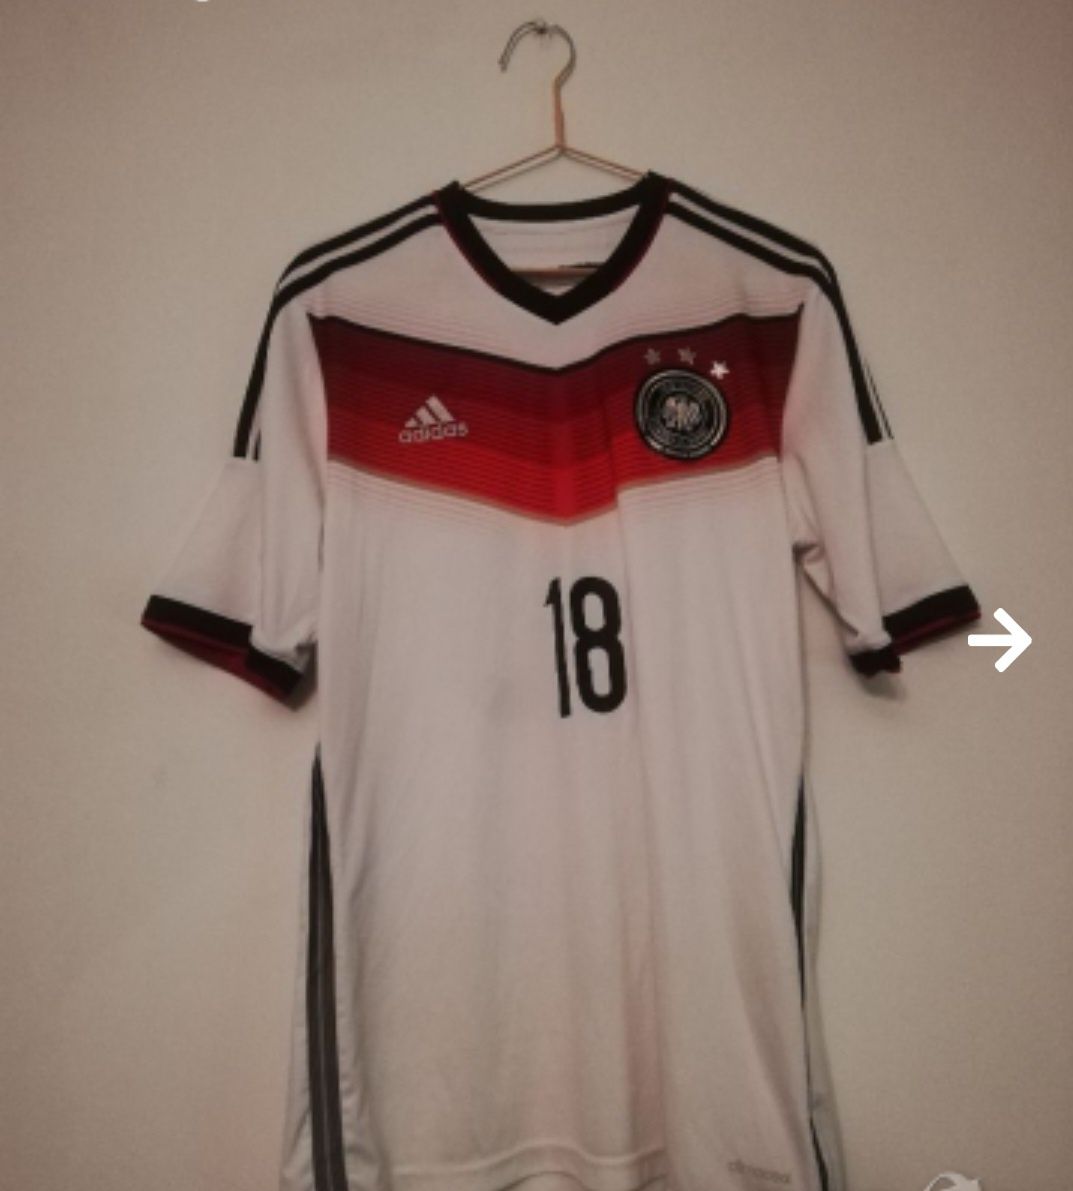 Тениска на Германия / Germany / Deutschland национален отбор по футбол